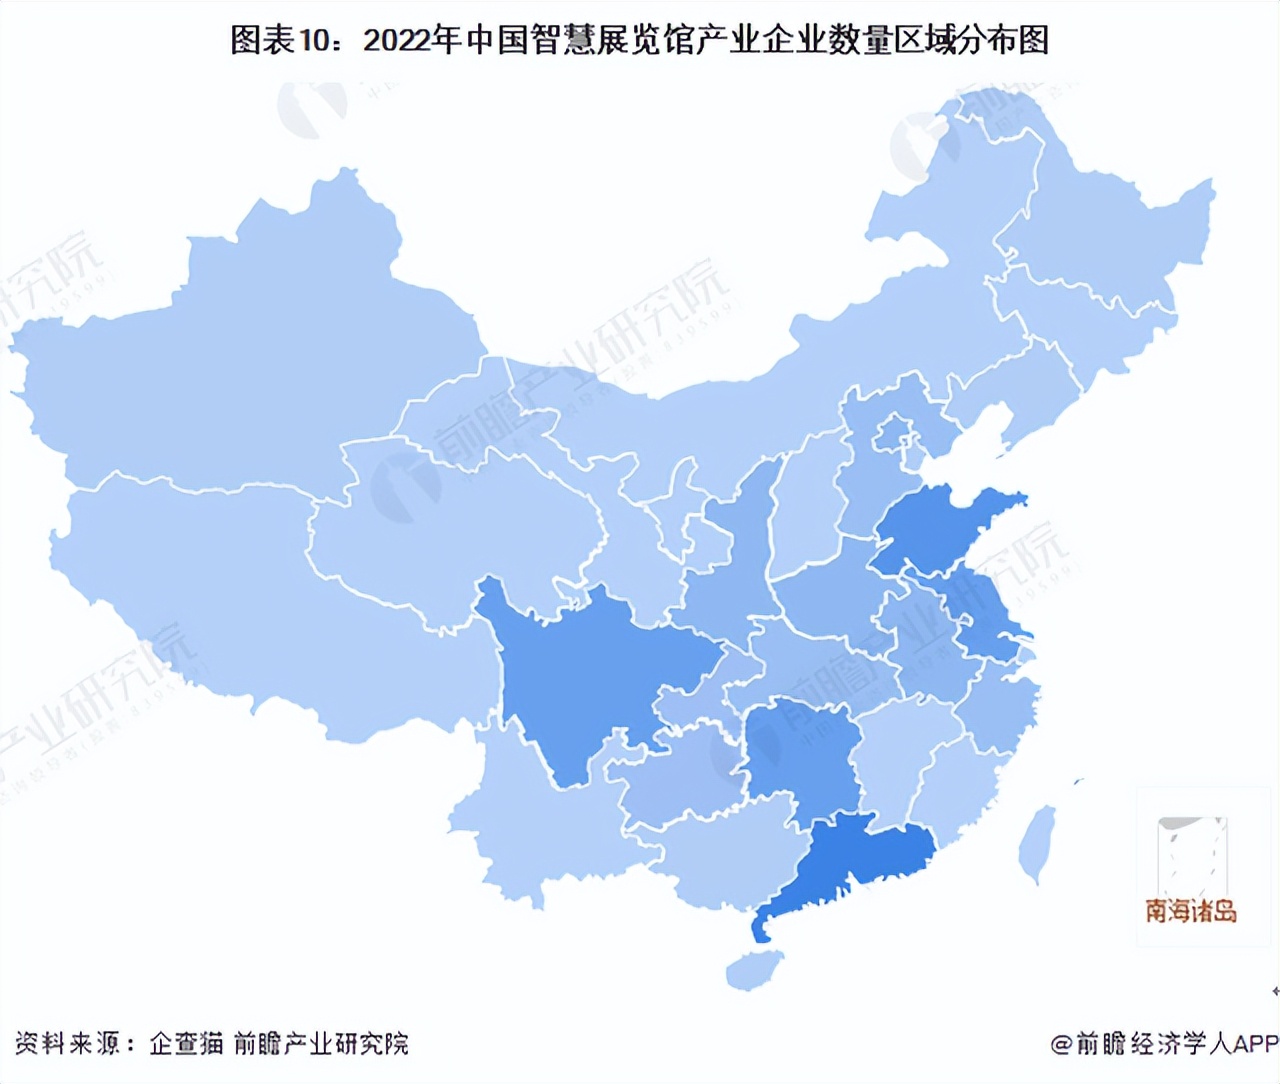 2022年中国智慧展览馆产业企业数量区域分布图